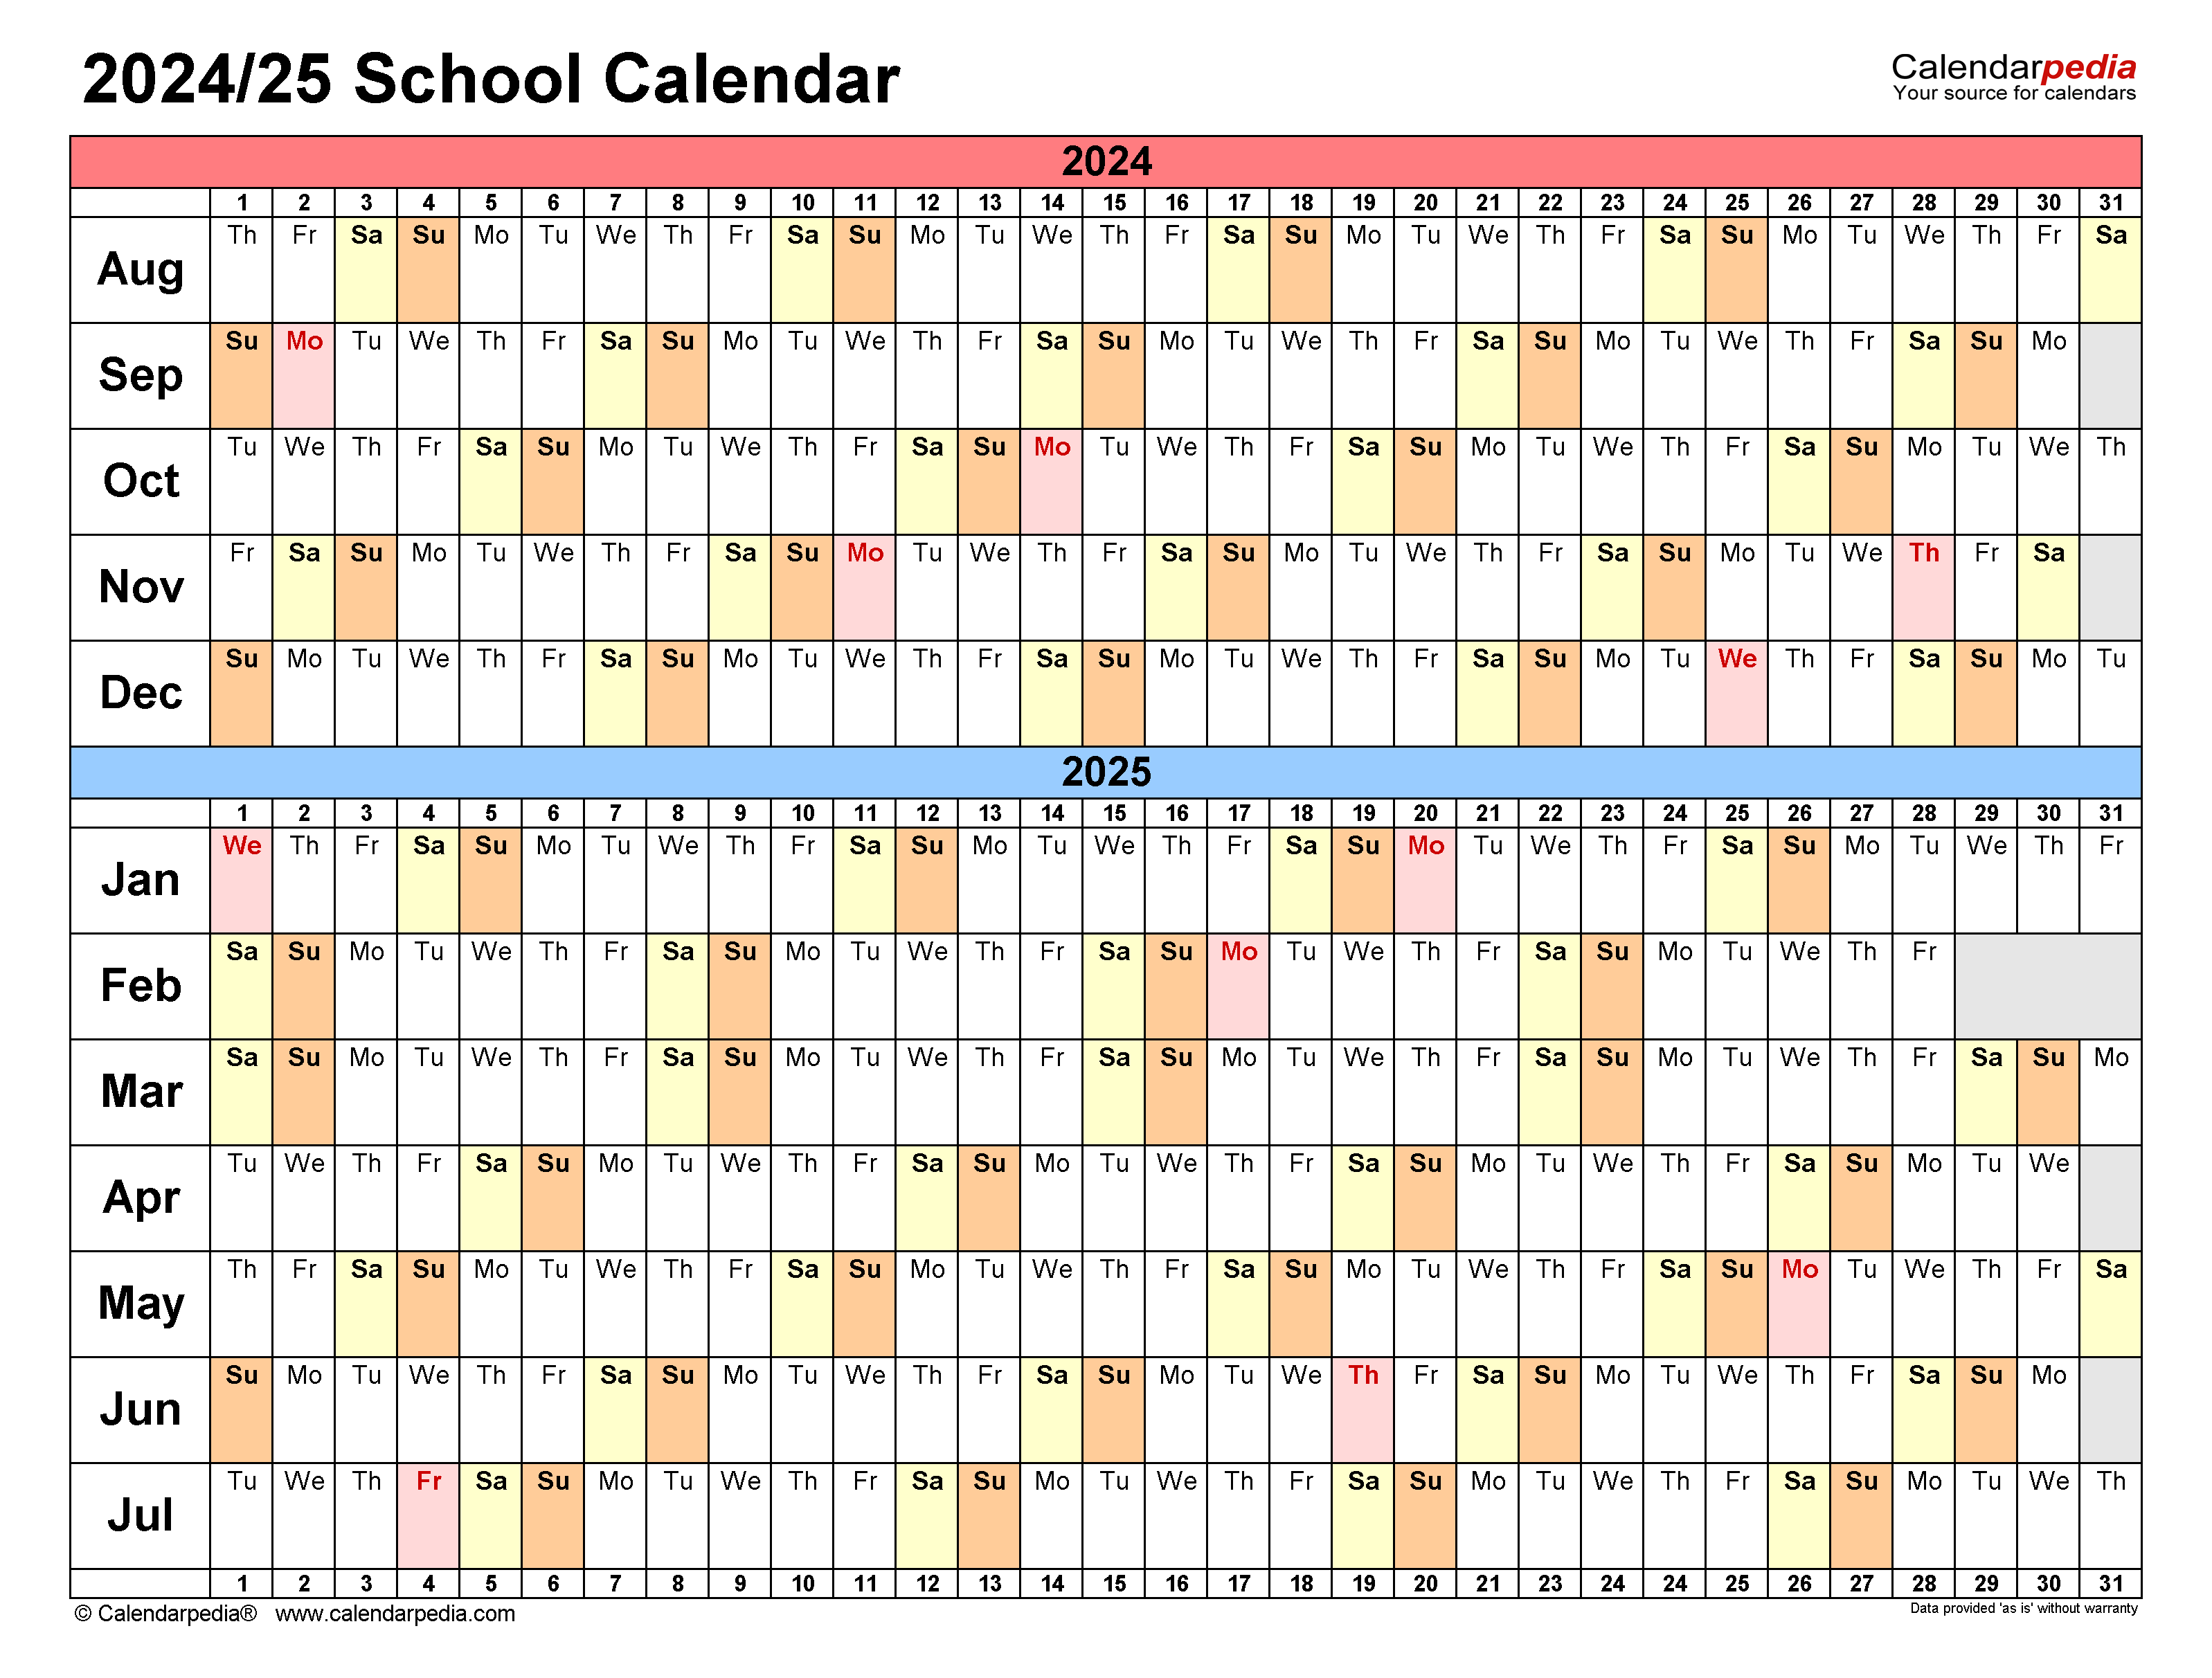 csun-spring-2024-calendar-2024-calendar-printable